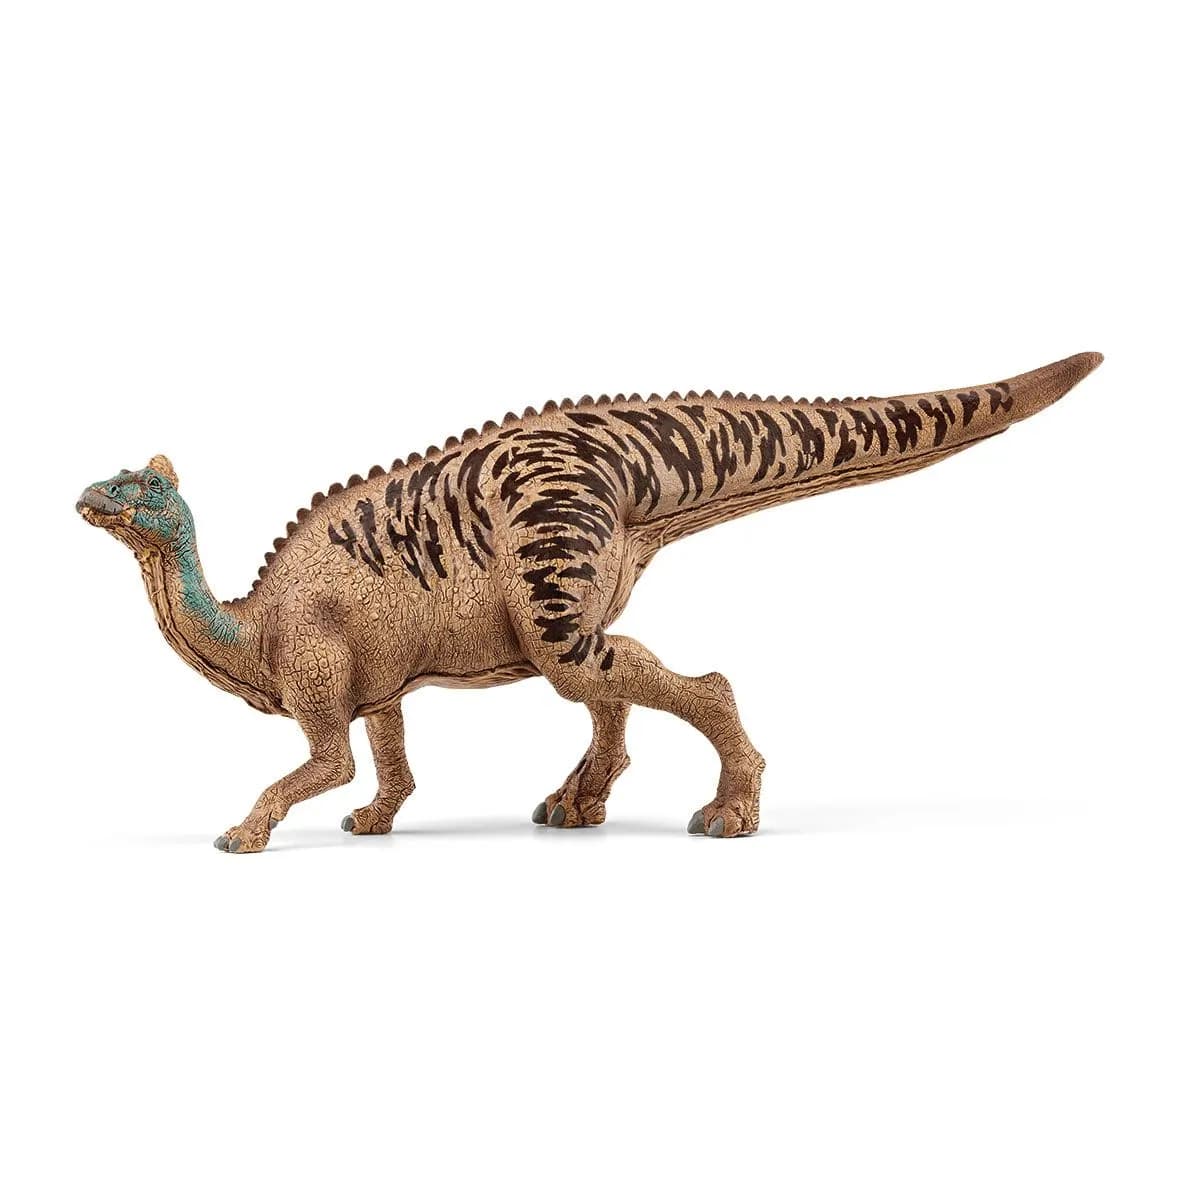 Schleich Edmonotosaurus dinosaur figurine